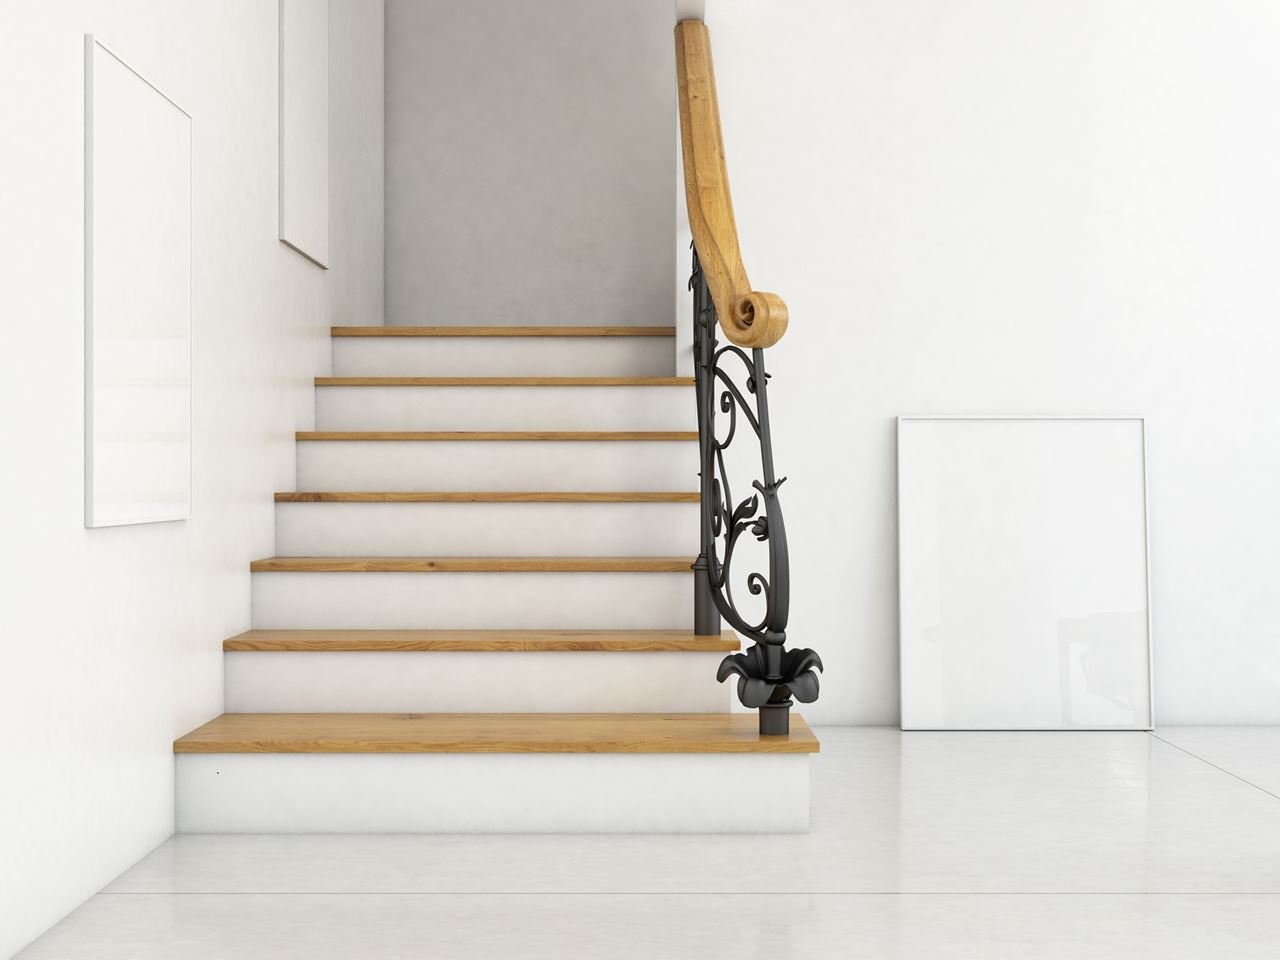 نصائح بخصوص الدرج او السلّم الداخلي بحسب الفينج شوي